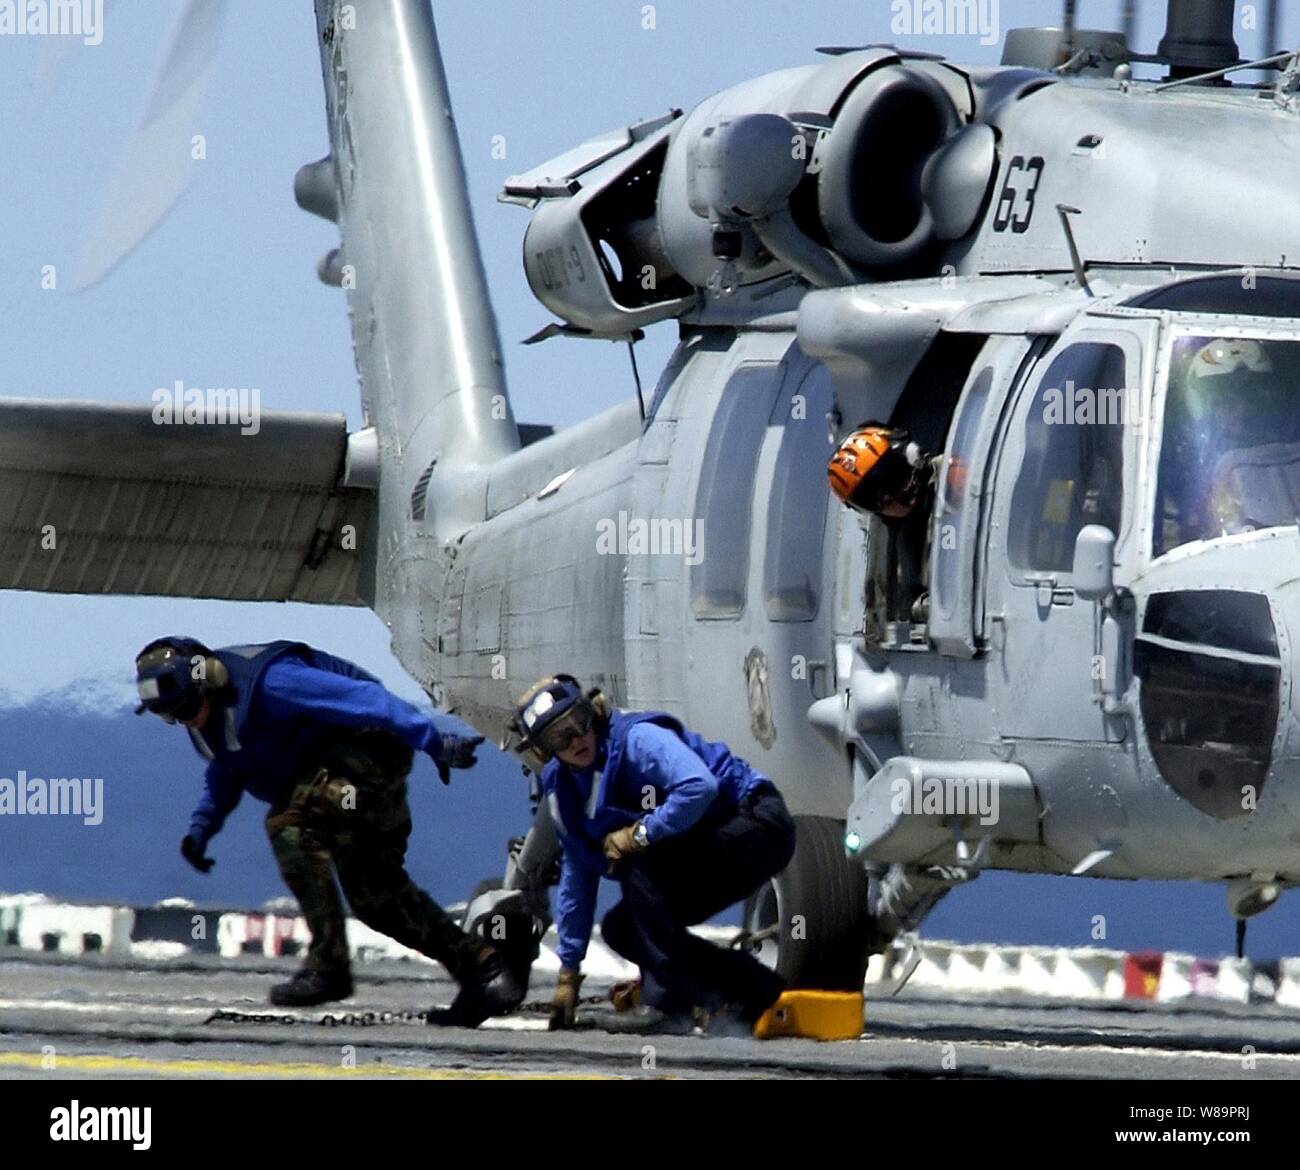 Flight Deck Mitarbeitern zugewiesen, die USS Ronald Reagan (CVN 76) bereiten die Landezone nach Blocken und Verkettung einer MH-60S Seahawk Helikopter in das Flight Deck während des Fluges Operationen im Pazifischen Ozean am 27. April 2005 zu löschen. Der Nimitz-Klasse, Atomgetriebenen Flugzeugträger ist unterwegs im Pazifik die Durchführung von routinemäßigen Carrier operations. Stockfoto